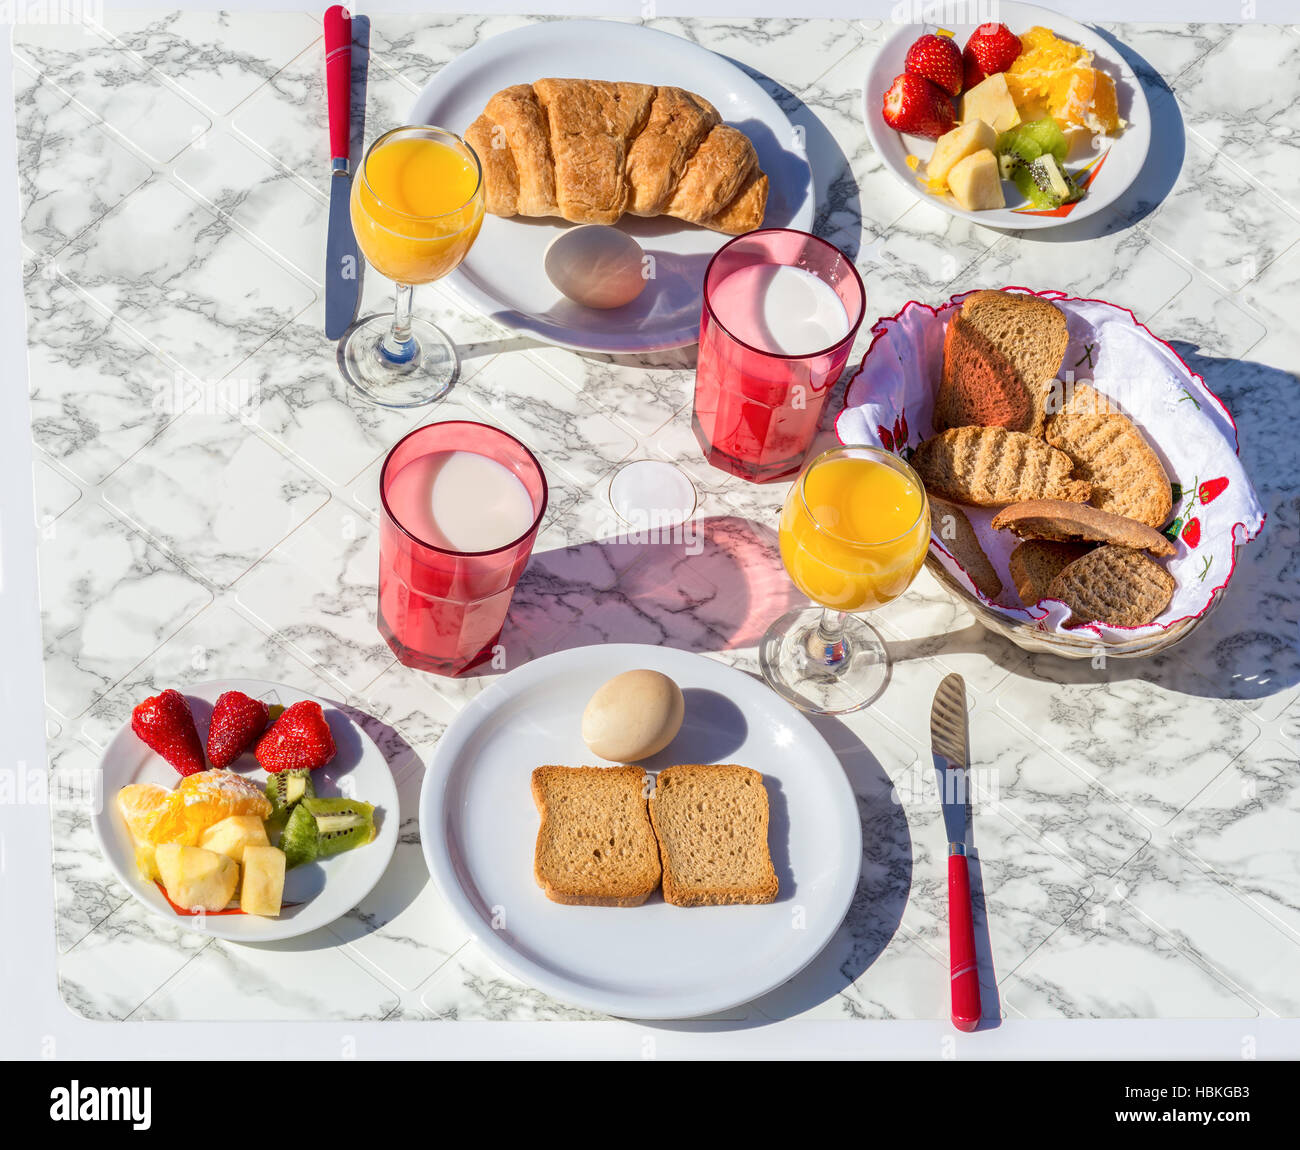 Gedeckter Tisch mit Speisen und Getränke zum Frühstück Stockfoto